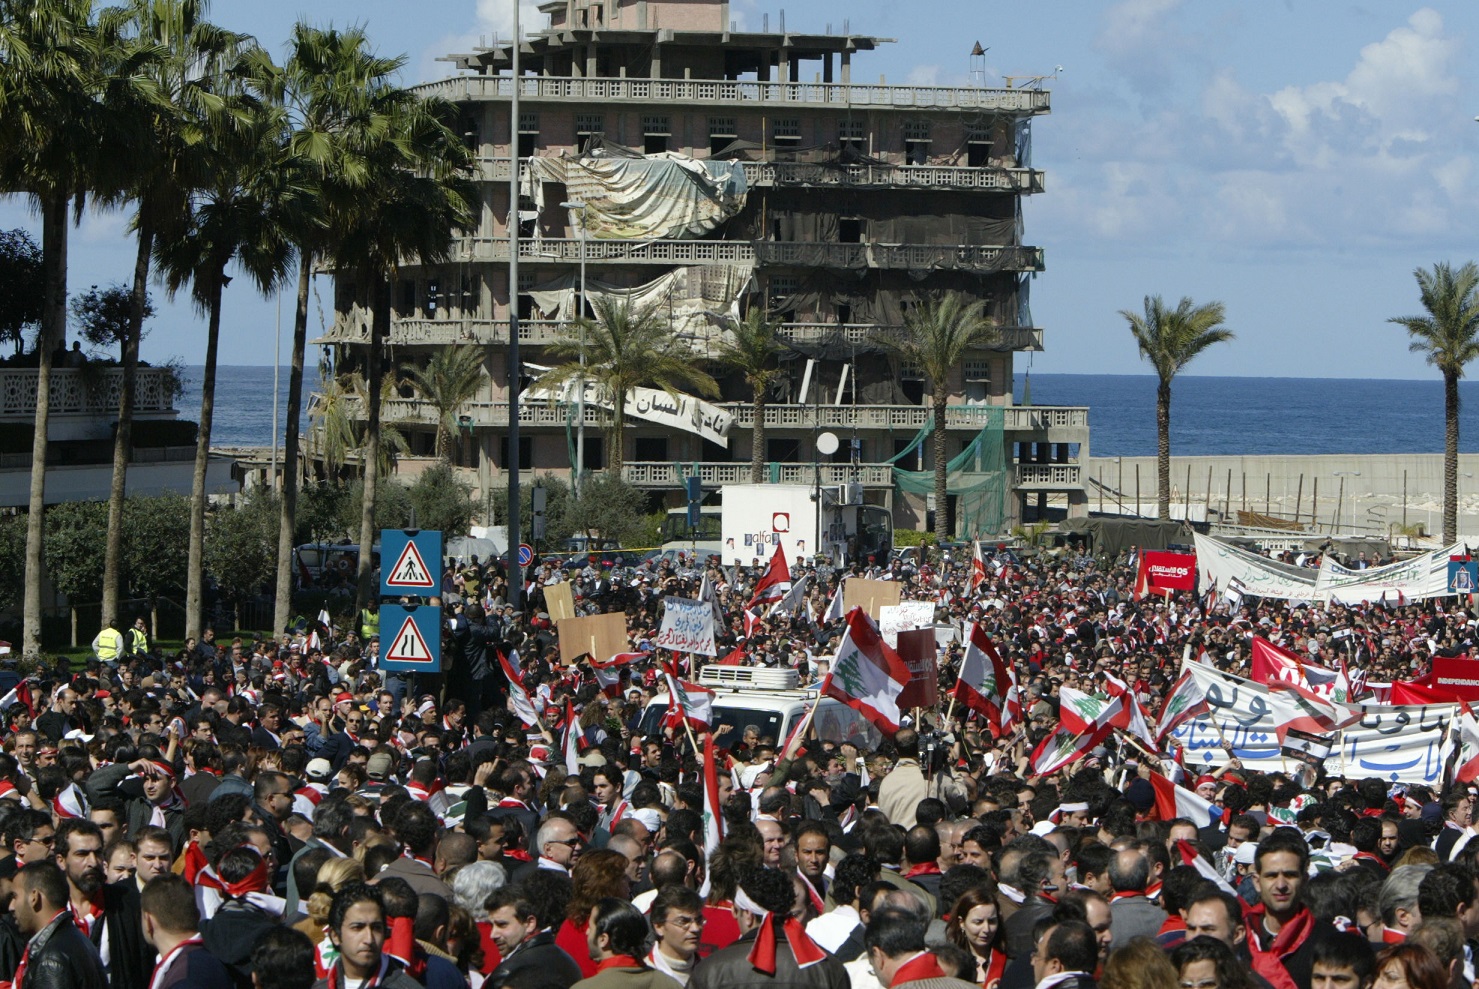 Des milliers de Libanais manifestent le 21 février 2005 sur le site de l’assassinat de l’ancien Premier ministre Rafiq Hariri, le 14 février, dans le centre de Beyrouth. L’hôtel Saint-George, détruit pendant la guerre civile, est visible à l’arrière-plan (AFP)